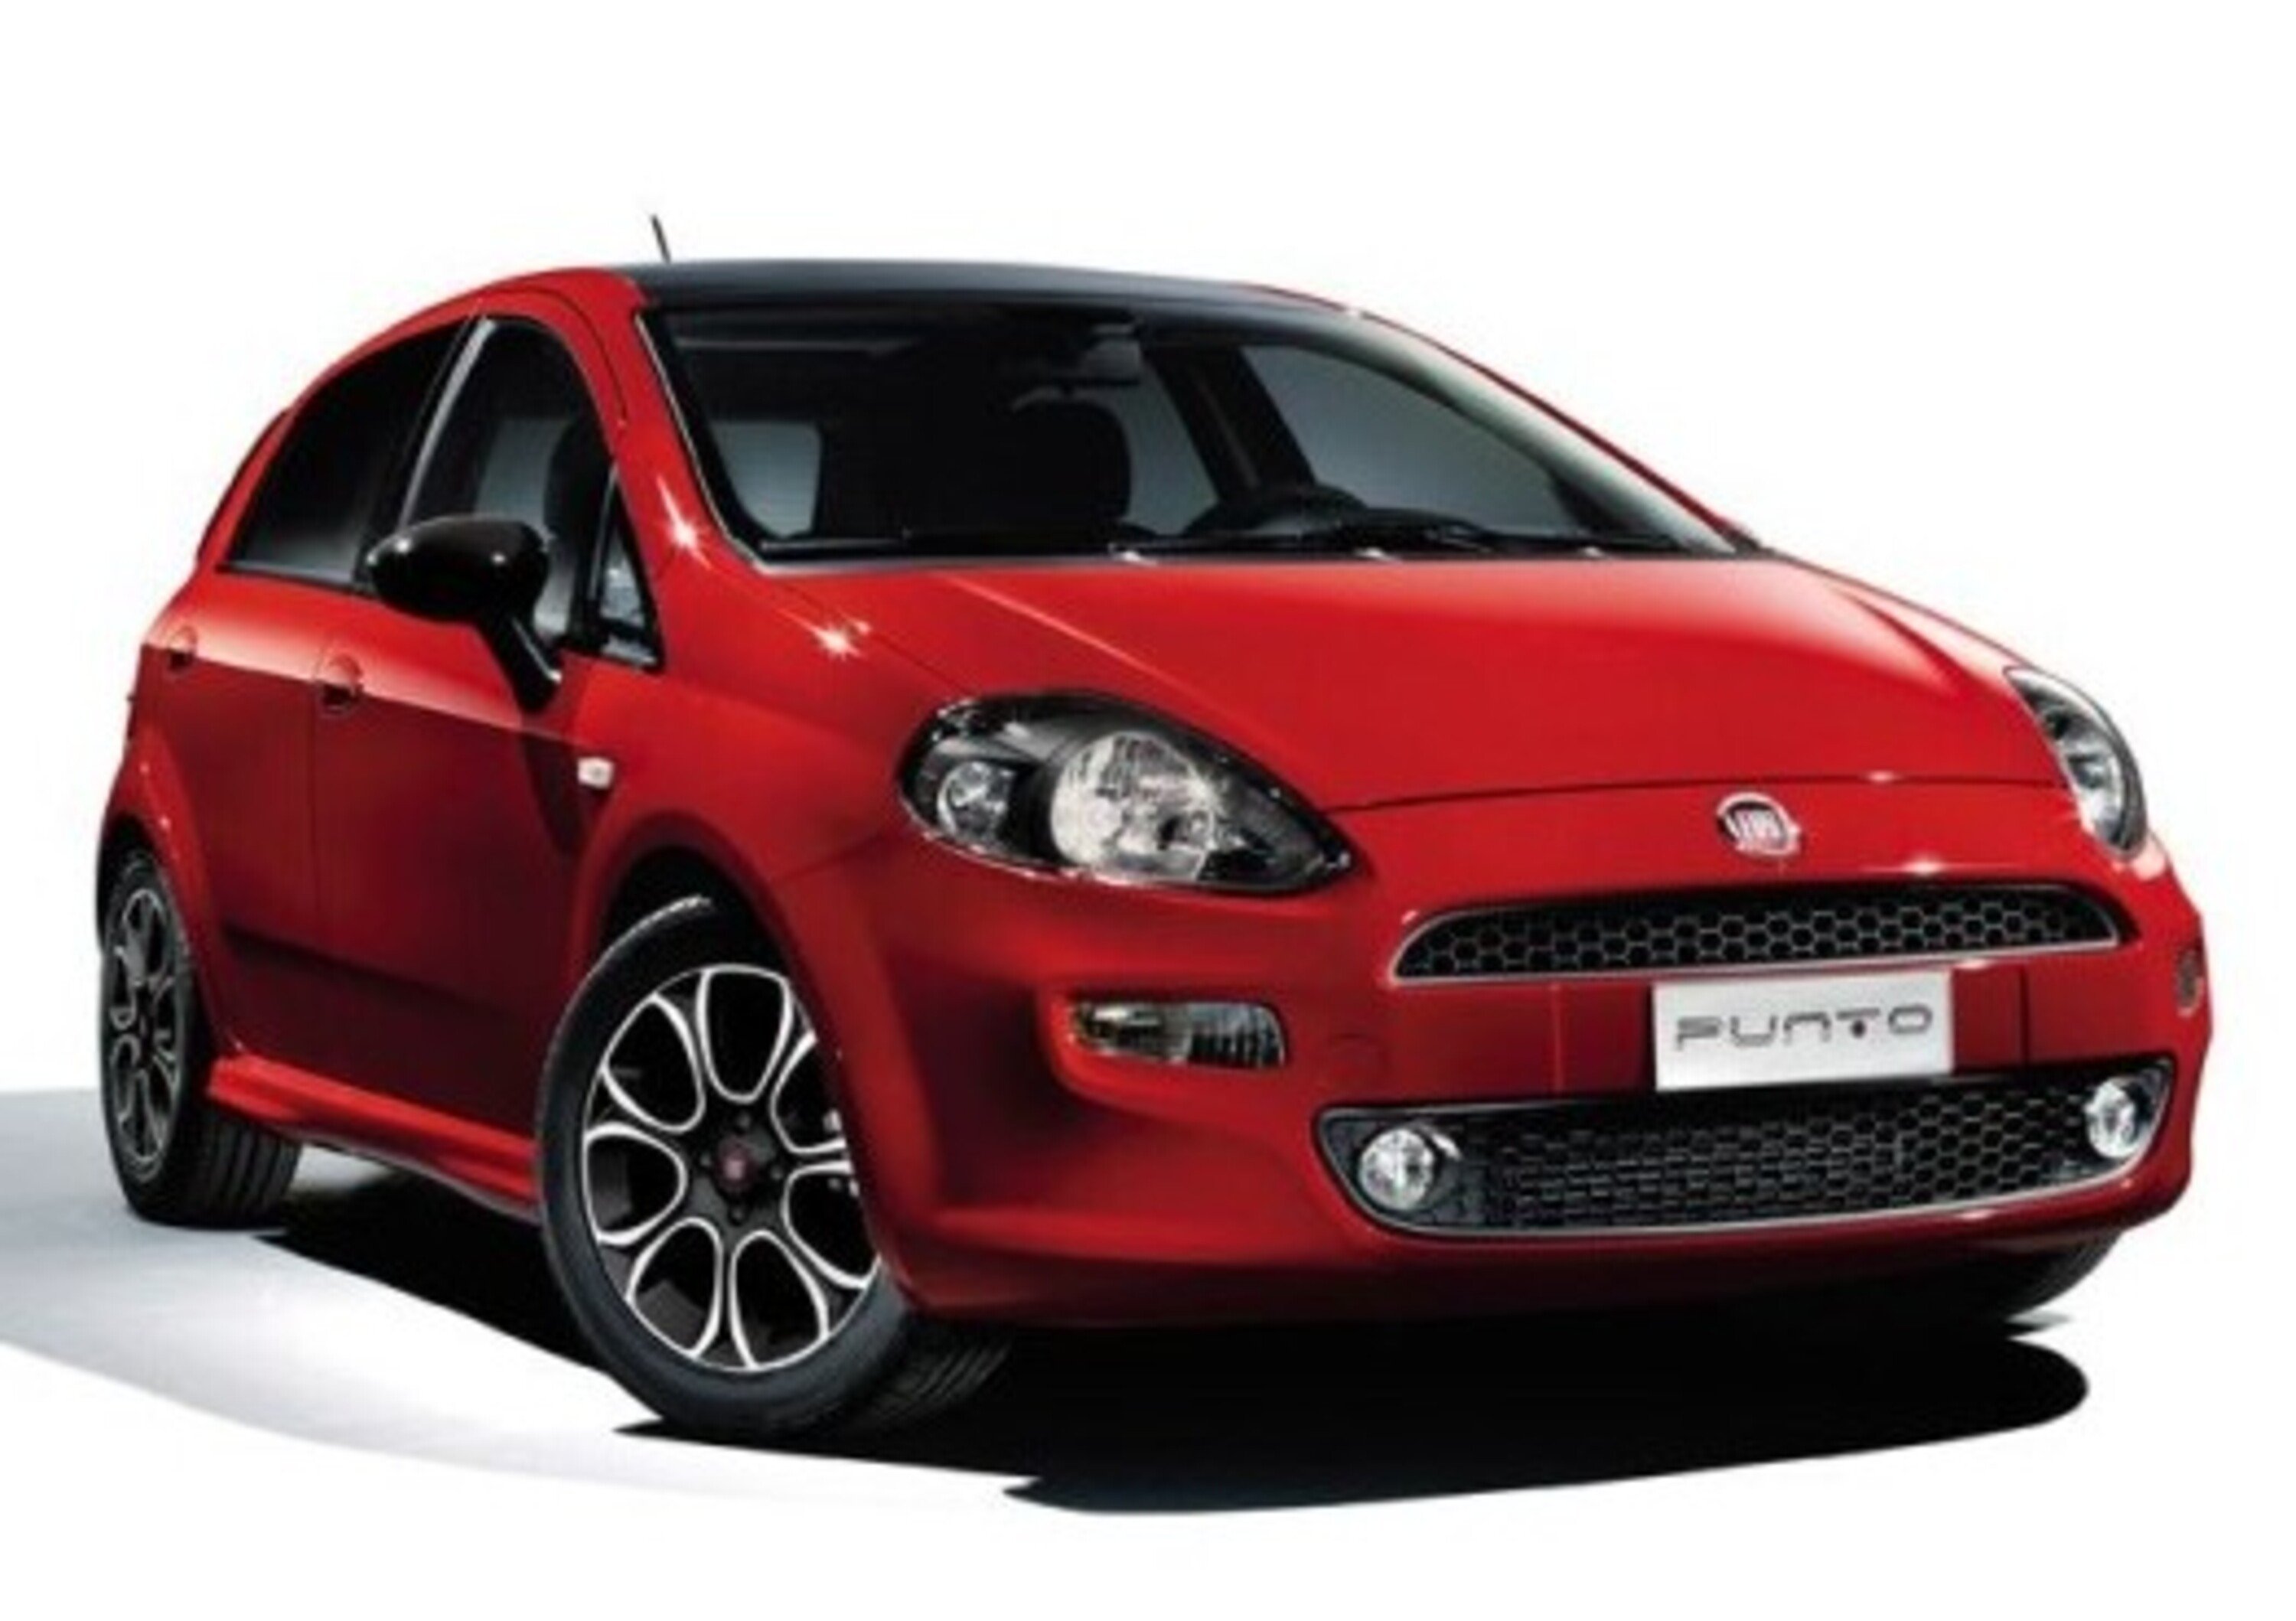 Fiat Punto, offerta shock: in vendita a 4.800 euro